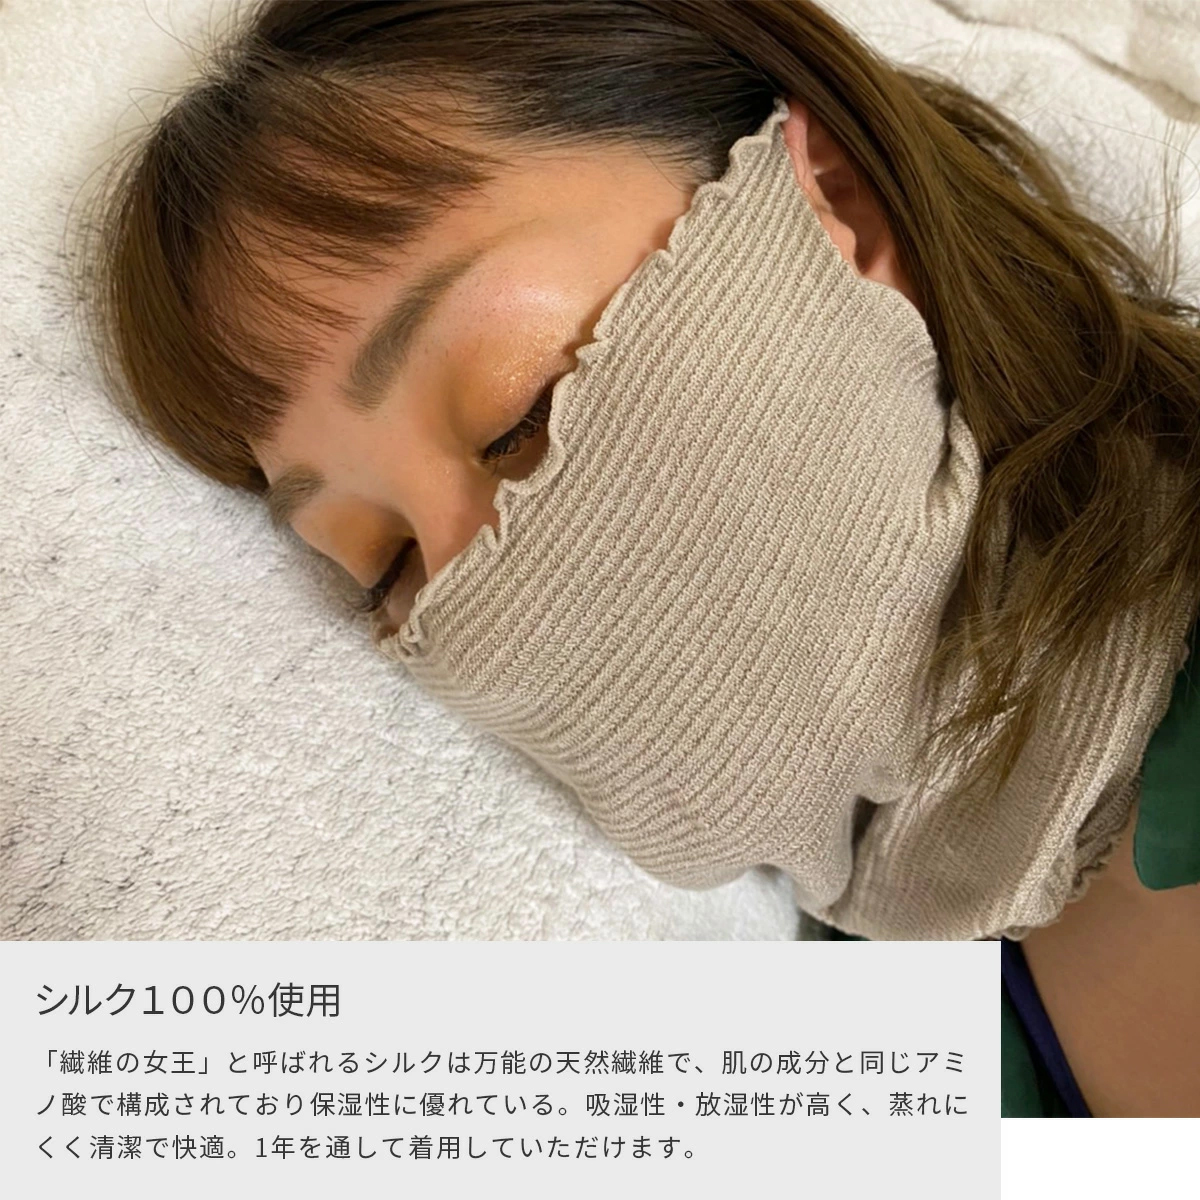 楽天市場 日本製 フェイスマスク シルク100 就寝用マスク 寝るとき シルク シルクフェイスマスク フェイスカバー 保温 保湿 冷え対策 乾燥対策 薄手 オールシーズン 紫外線予防 ネックウォーマー スポーツ ランニング 運動 スポーツジム 日本製 送料無料 コモｄｅ